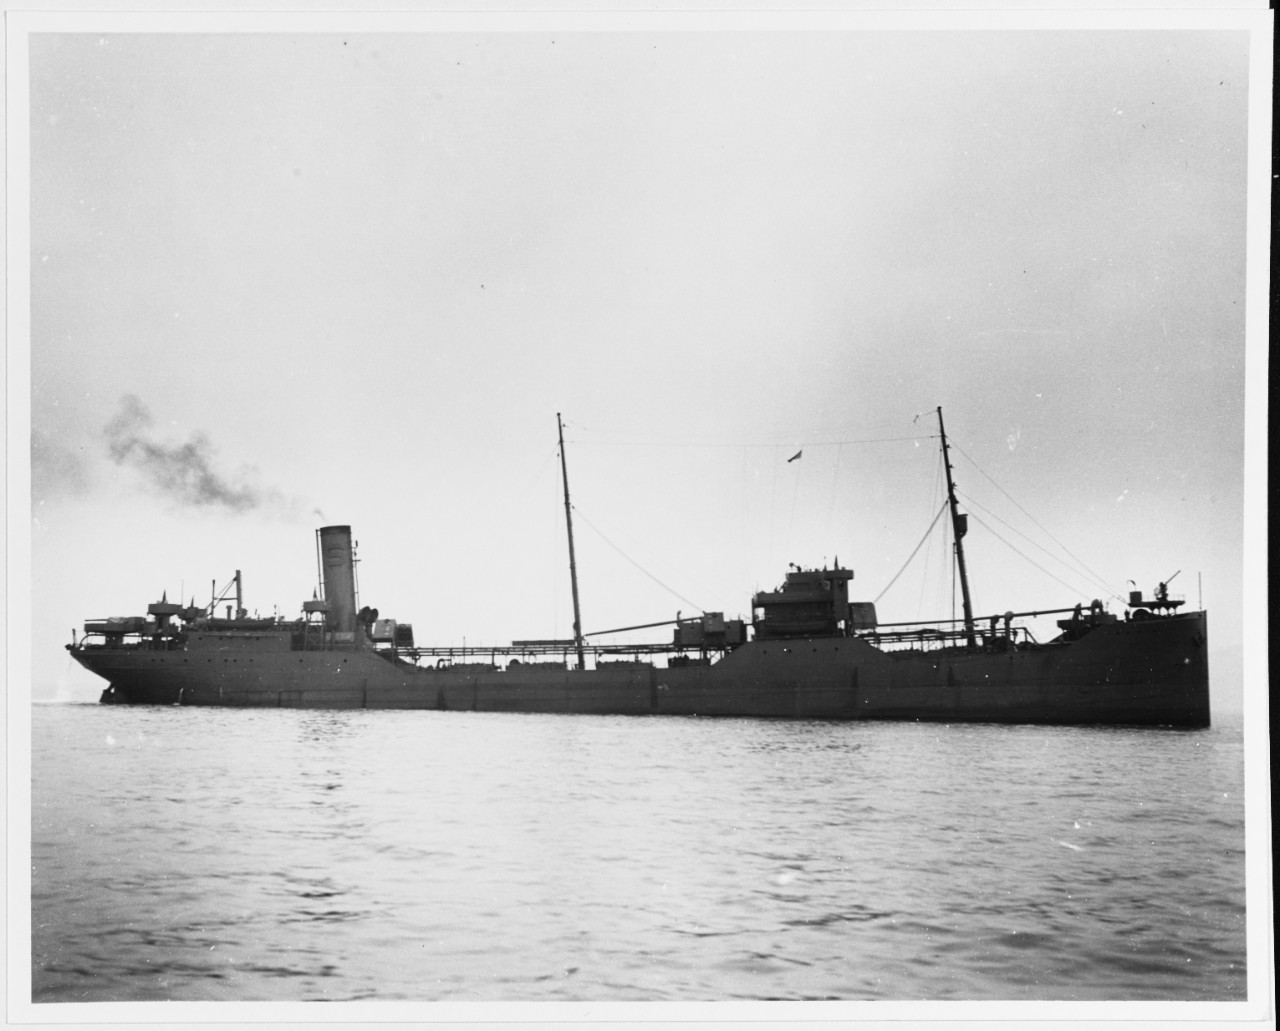 S.S. J. A. MOFFETT (U.S. Merchant Tanker, 1915-1951)